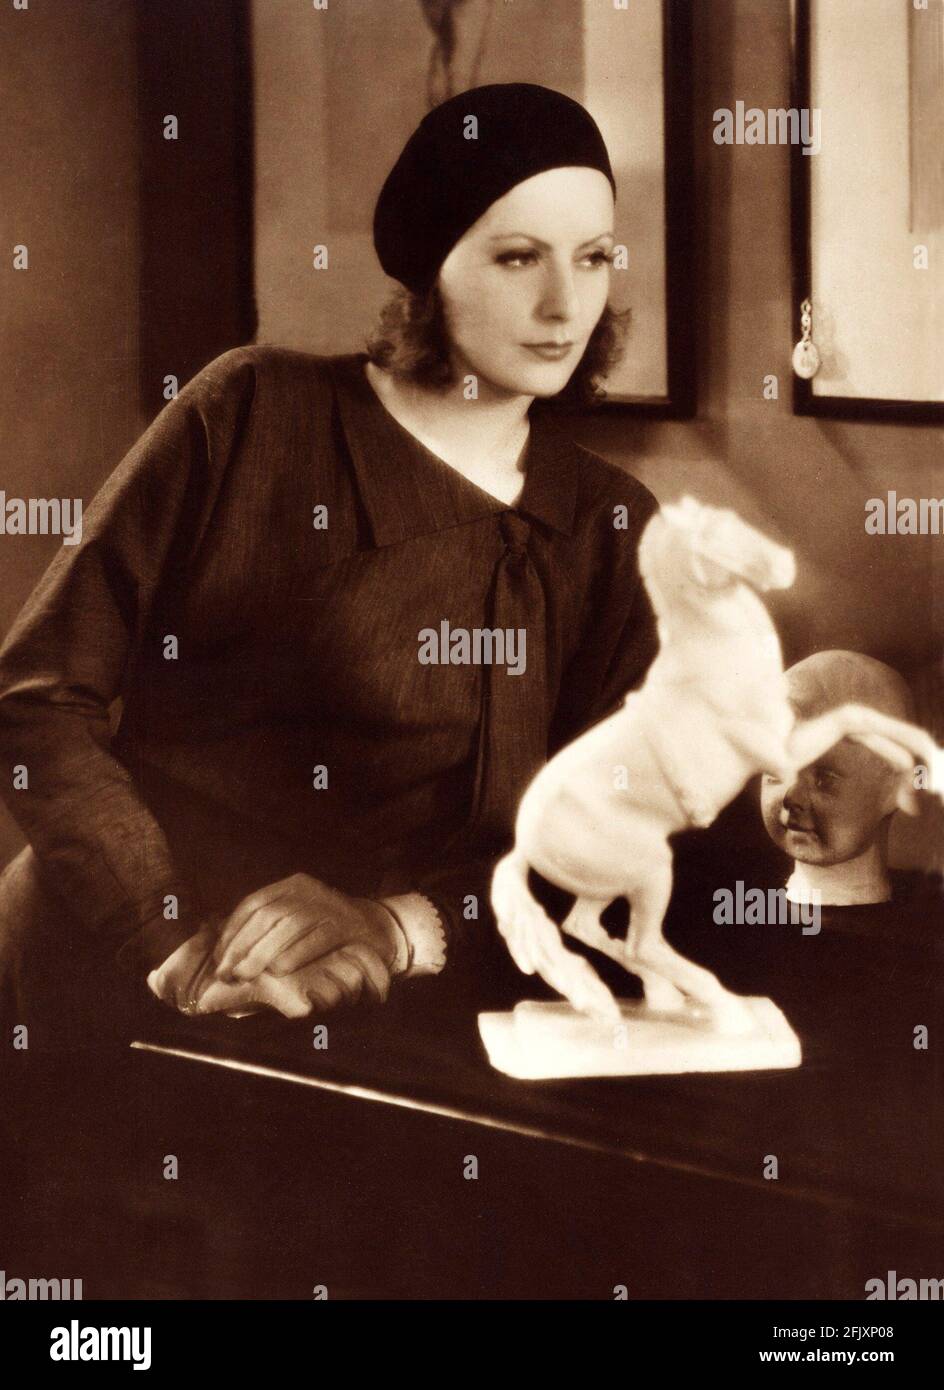 1929  , USA : The actress GRETA GARBO   in  THE KISS ( Il bacio )  by  Jacques Feyder , from a novel by George M. Saville  - MGM - SILENT MOVIE - FILM - CINEMA MUTO - portrait - ritratto - hat - cappello - basco -  cavallo statue - sculpture - scultura equestre - cavallo - forniture - arredamento - guanti - guanto - gloves - colletto - collar  ----  Archivio GBB Stock Photo